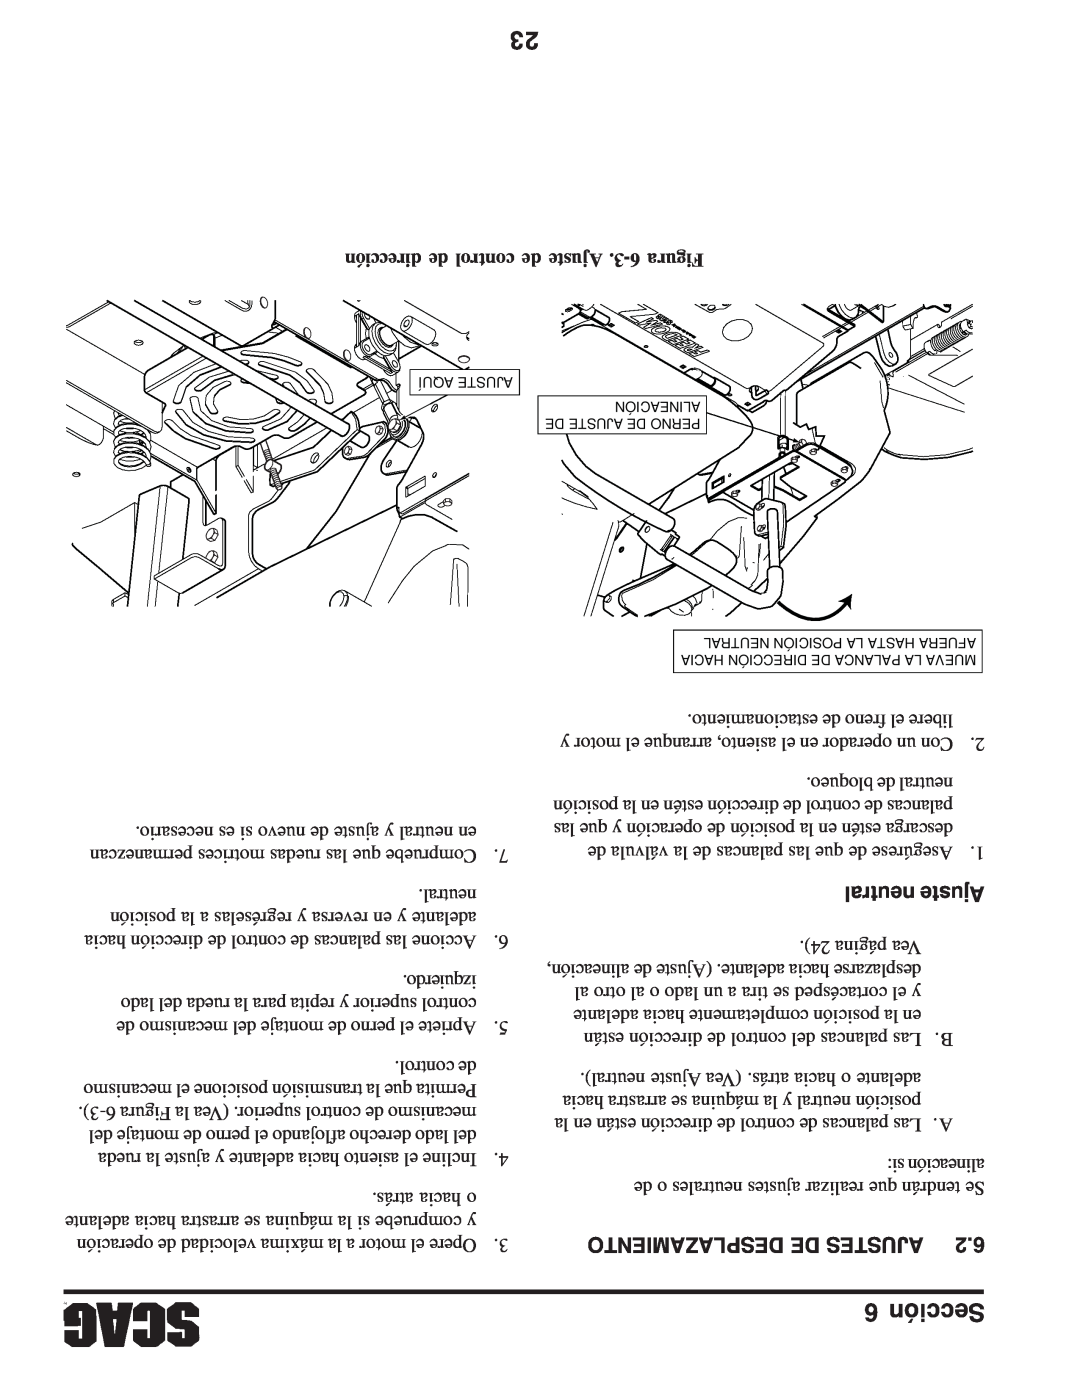 Scag Power Equipment SFZ manual neutral Ajuste, Desplazamiento De Ajustes, dirección de control de Ajuste .3-6 Figura 